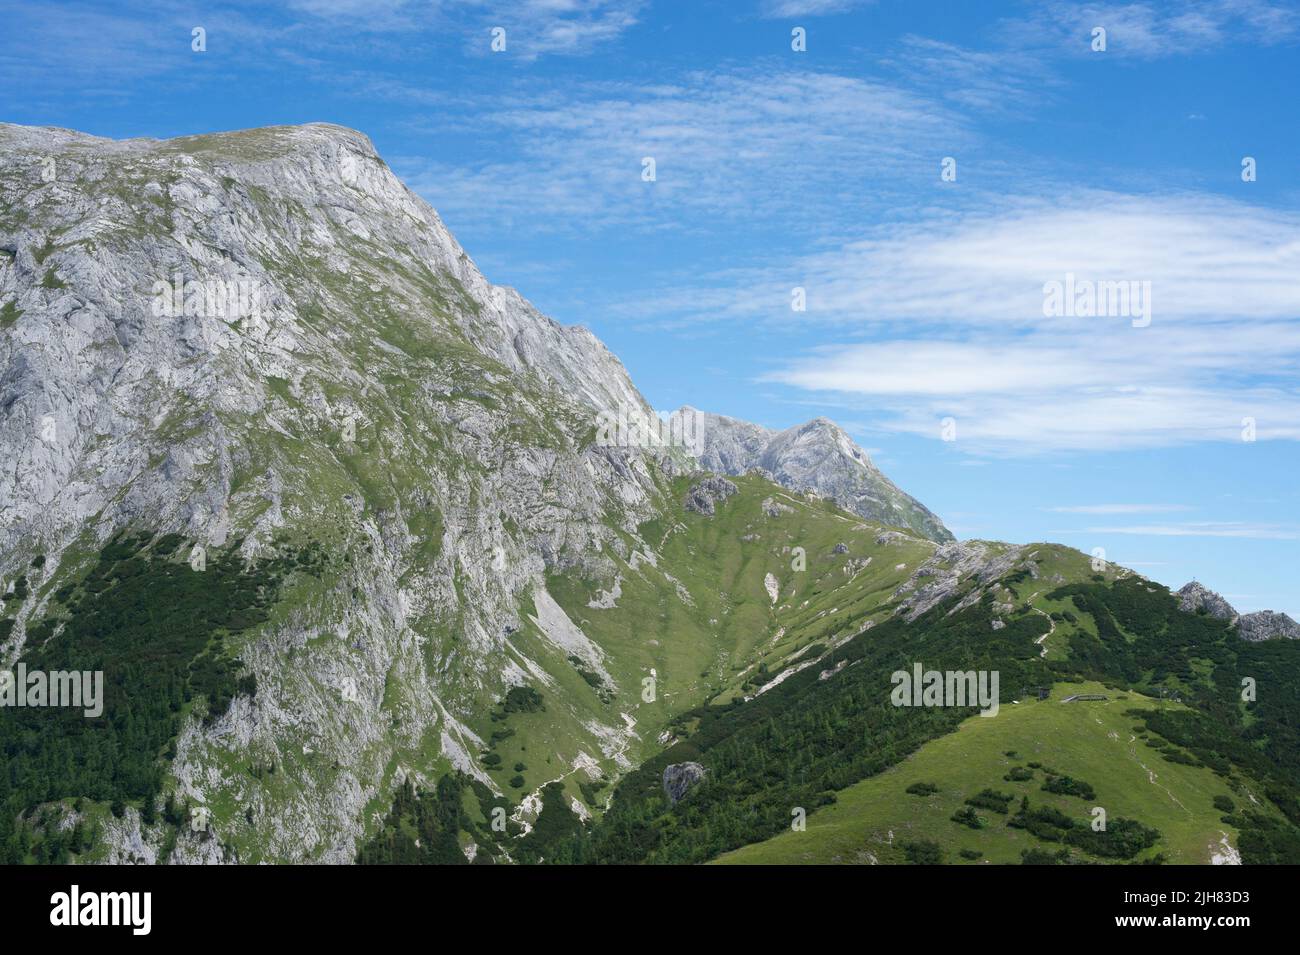 Hoher Göll et Hohes Brett près du mont Jenner, Alpes bavaroises, Berchtesgadener Alpen, Alpes berchtesgaden, Allemagne Banque D'Images